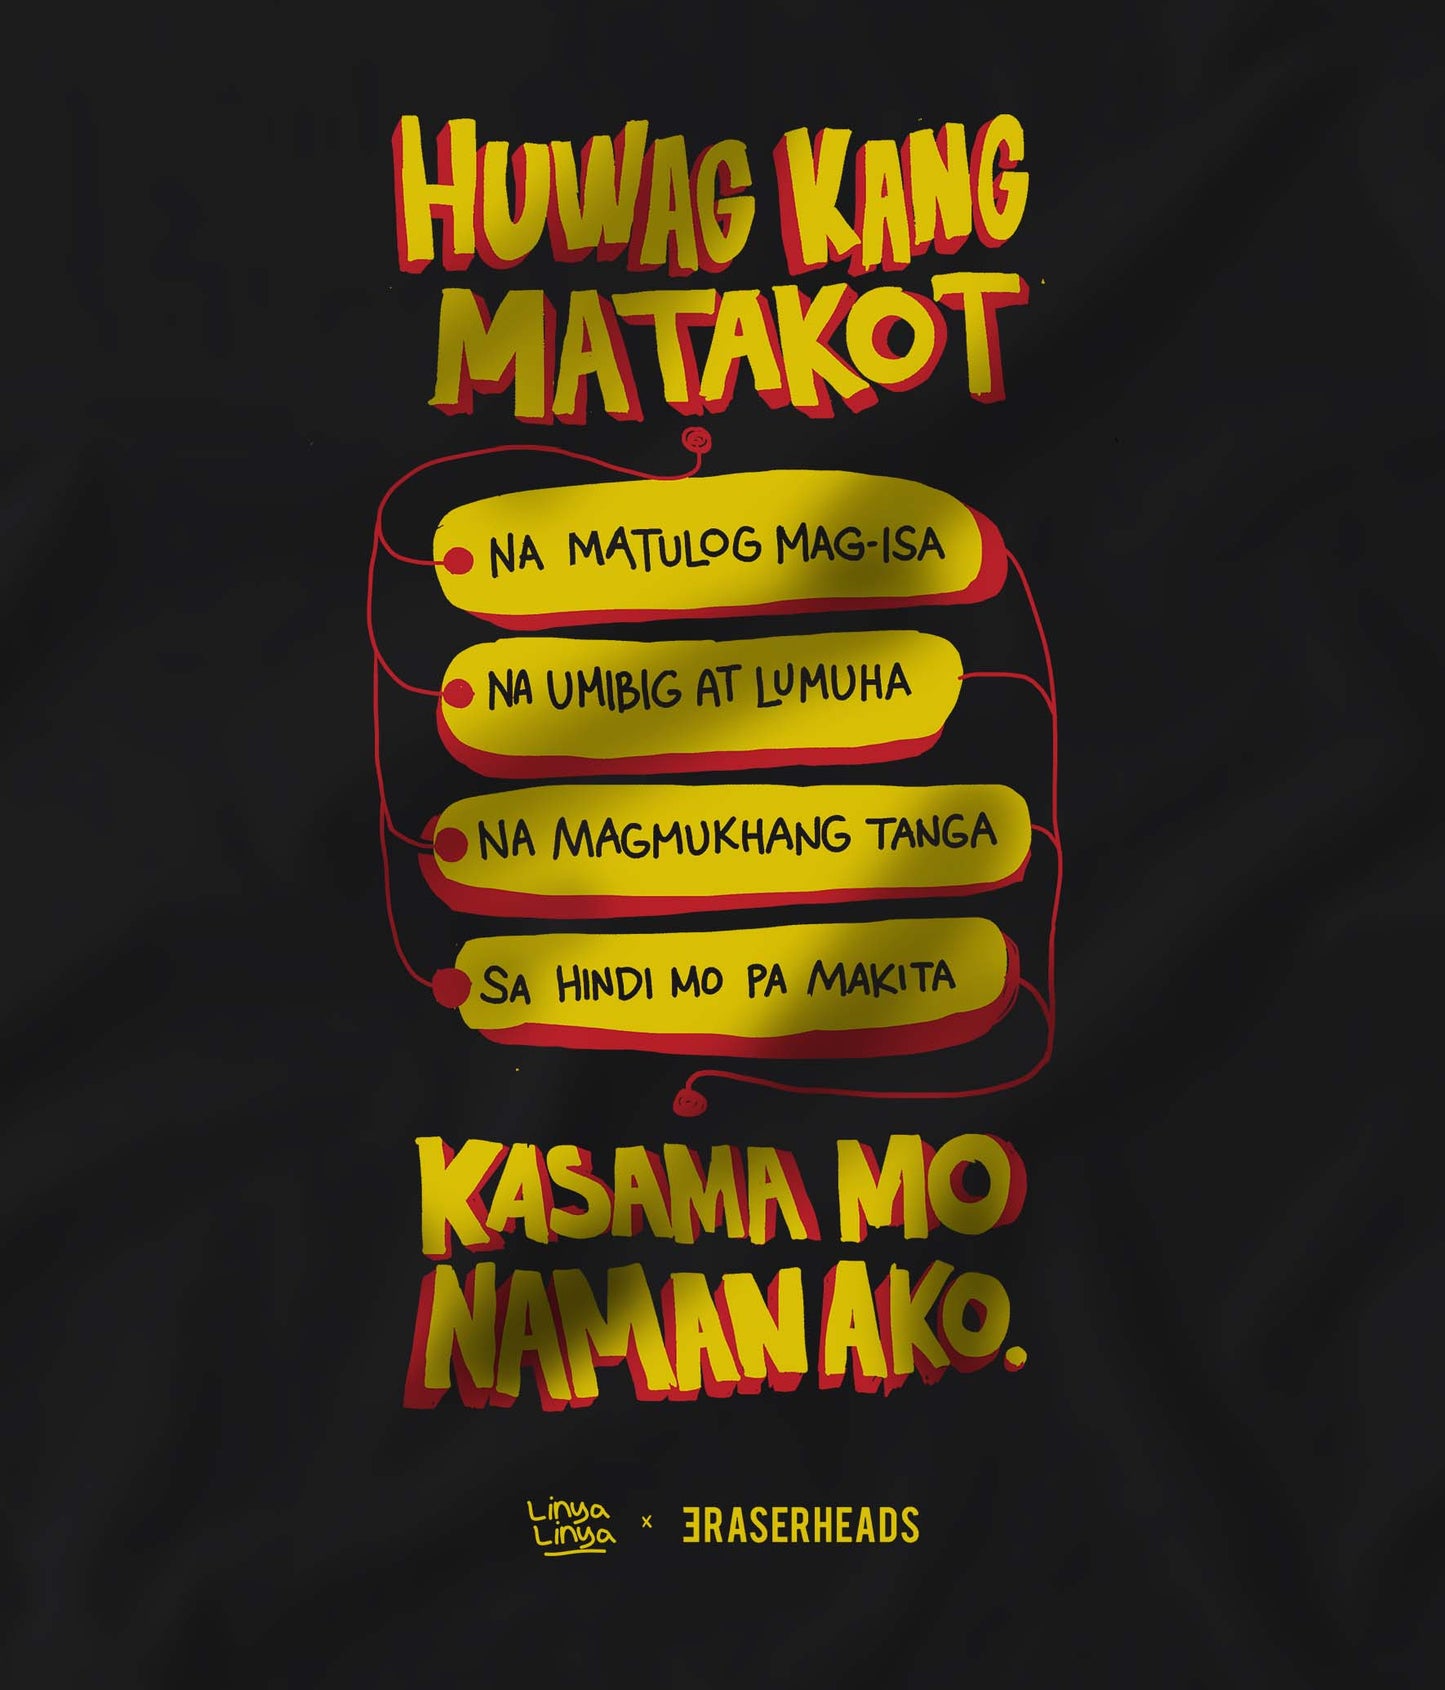 Linya-Linya X Eraserheads- Huwag Kang Matakot